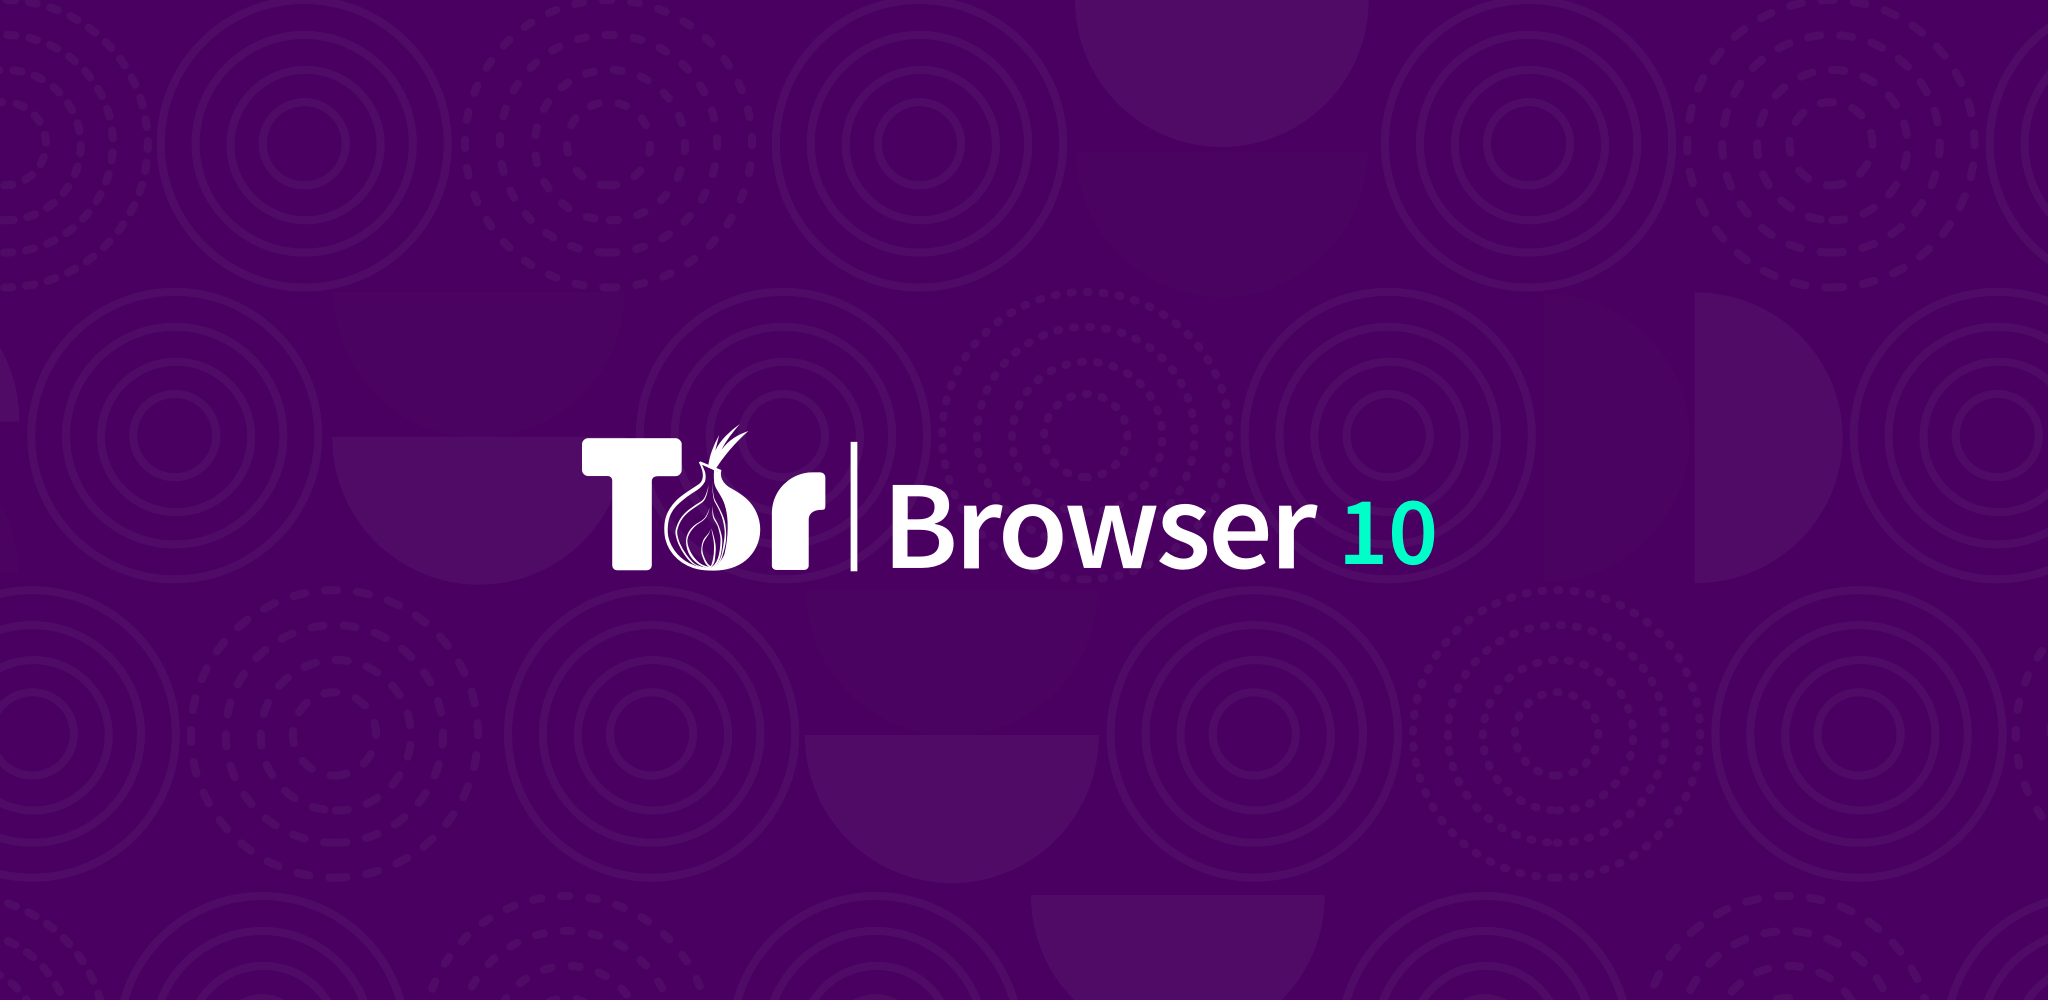 Tor browser app for android gidra как отключить обновление тор браузера